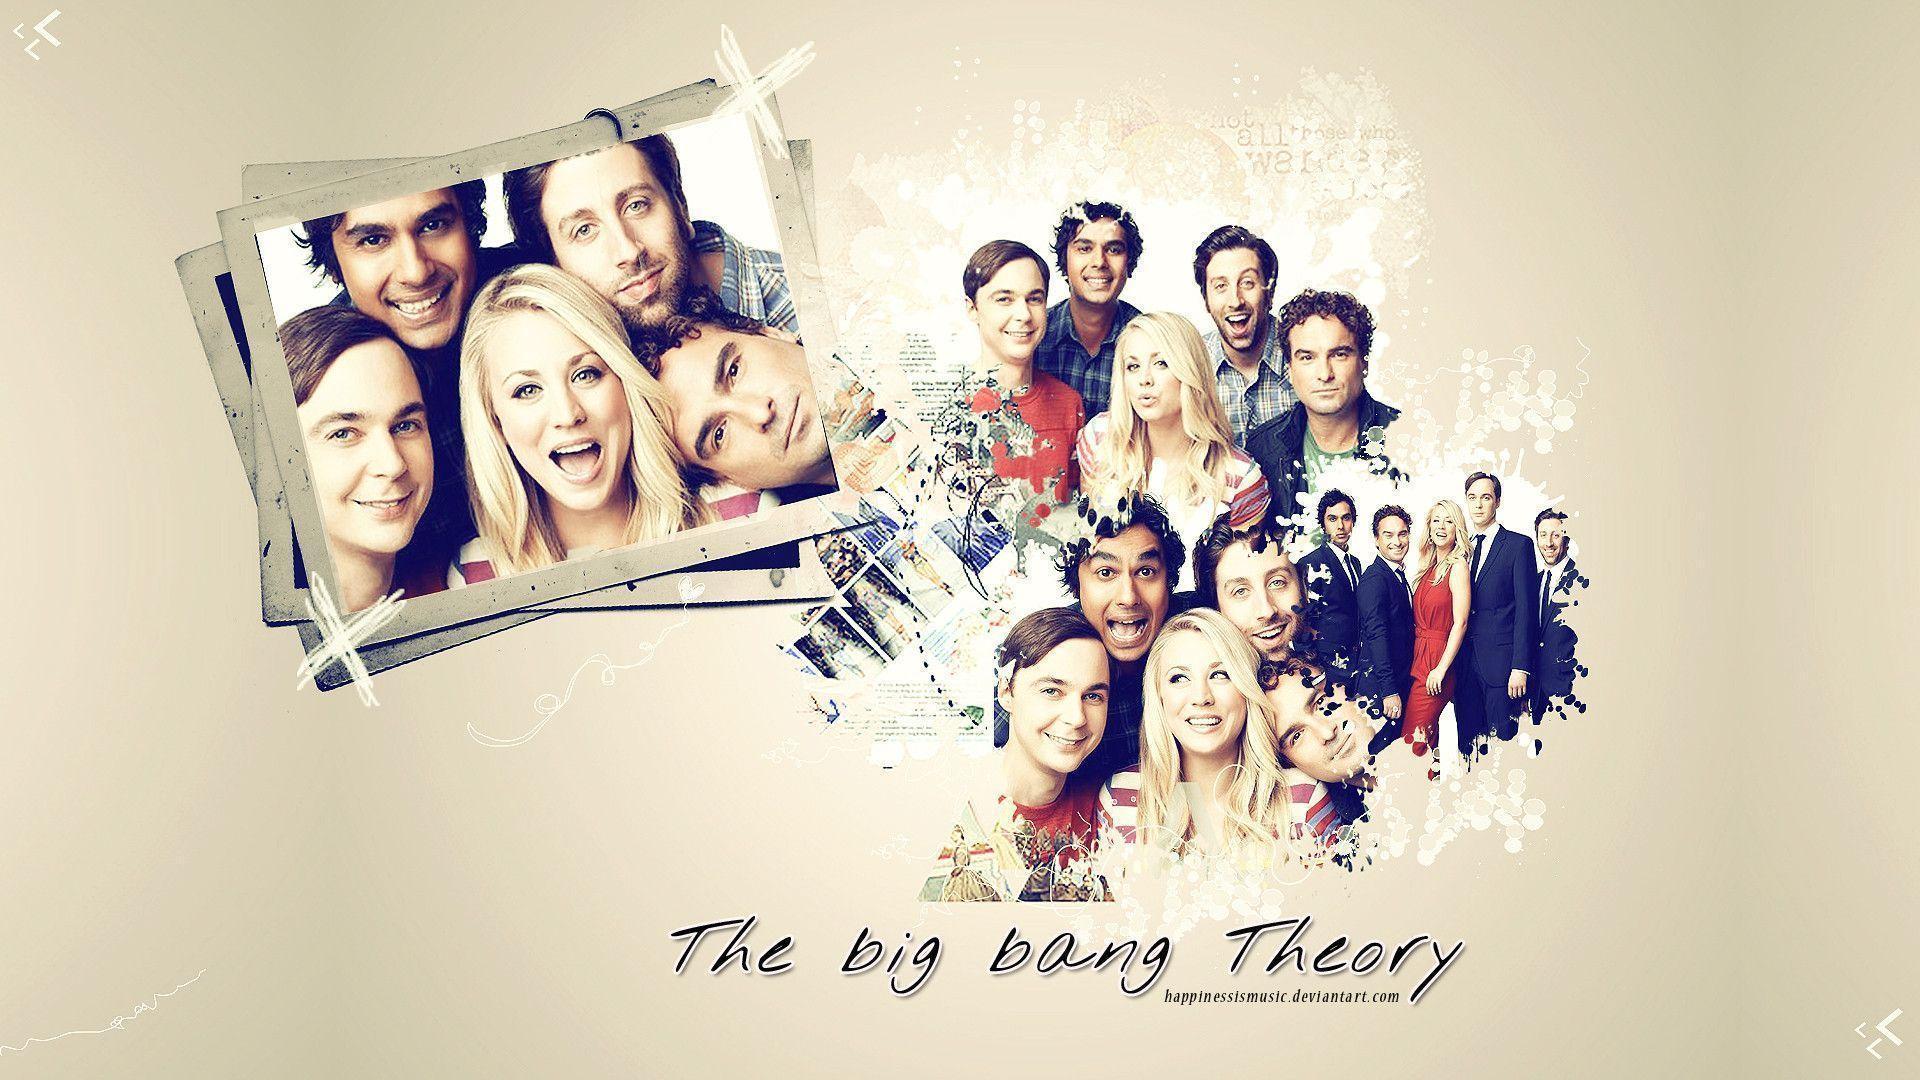 The big bang theory wallpaper 7